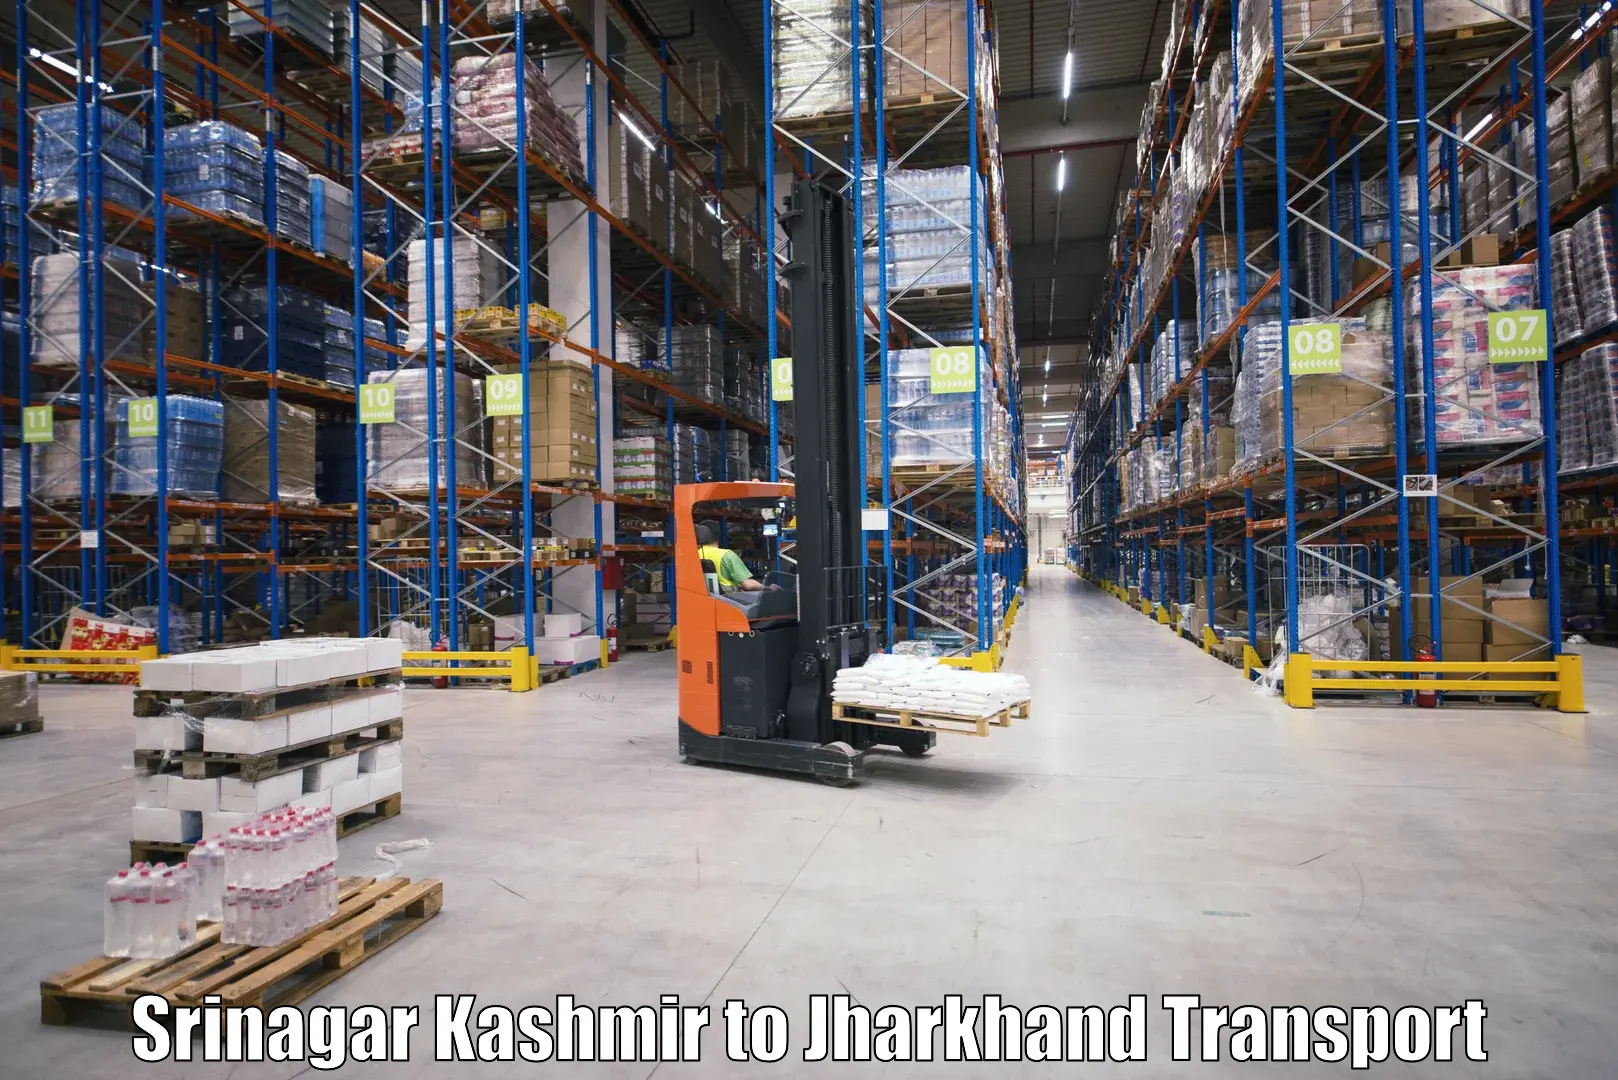 Truck transport companies in India Srinagar Kashmir to Barki Saria